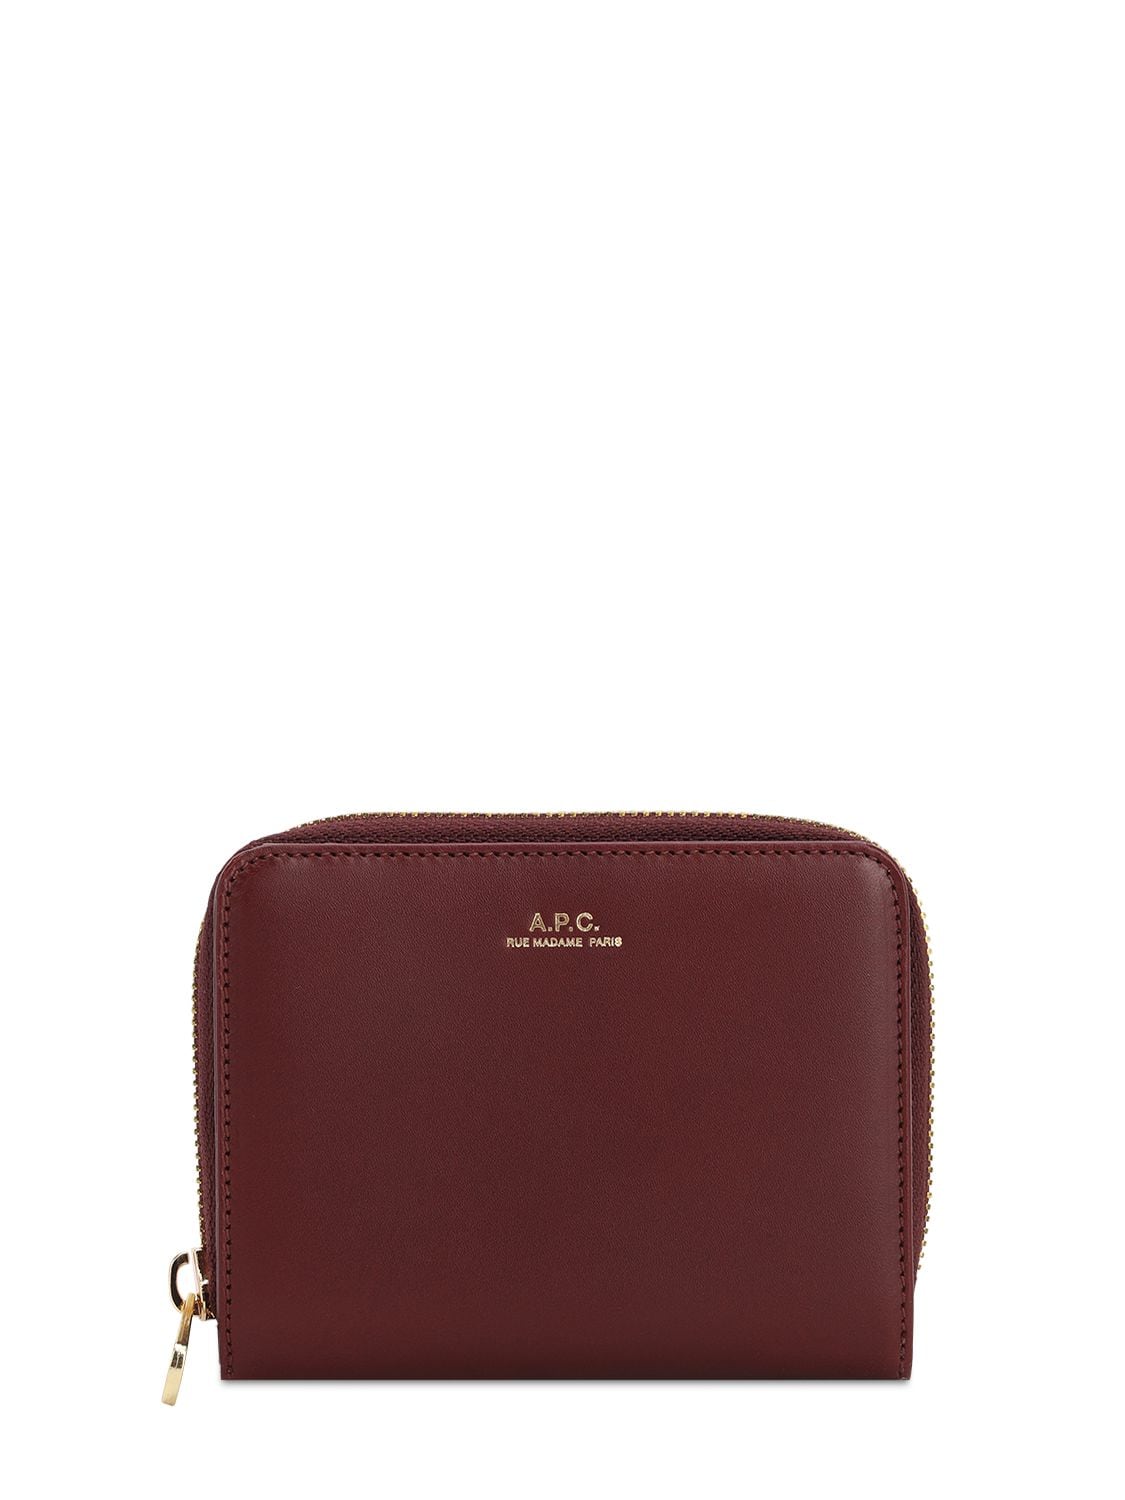 Apc Emmanuelle Zip-around Leather Wallet In Vino